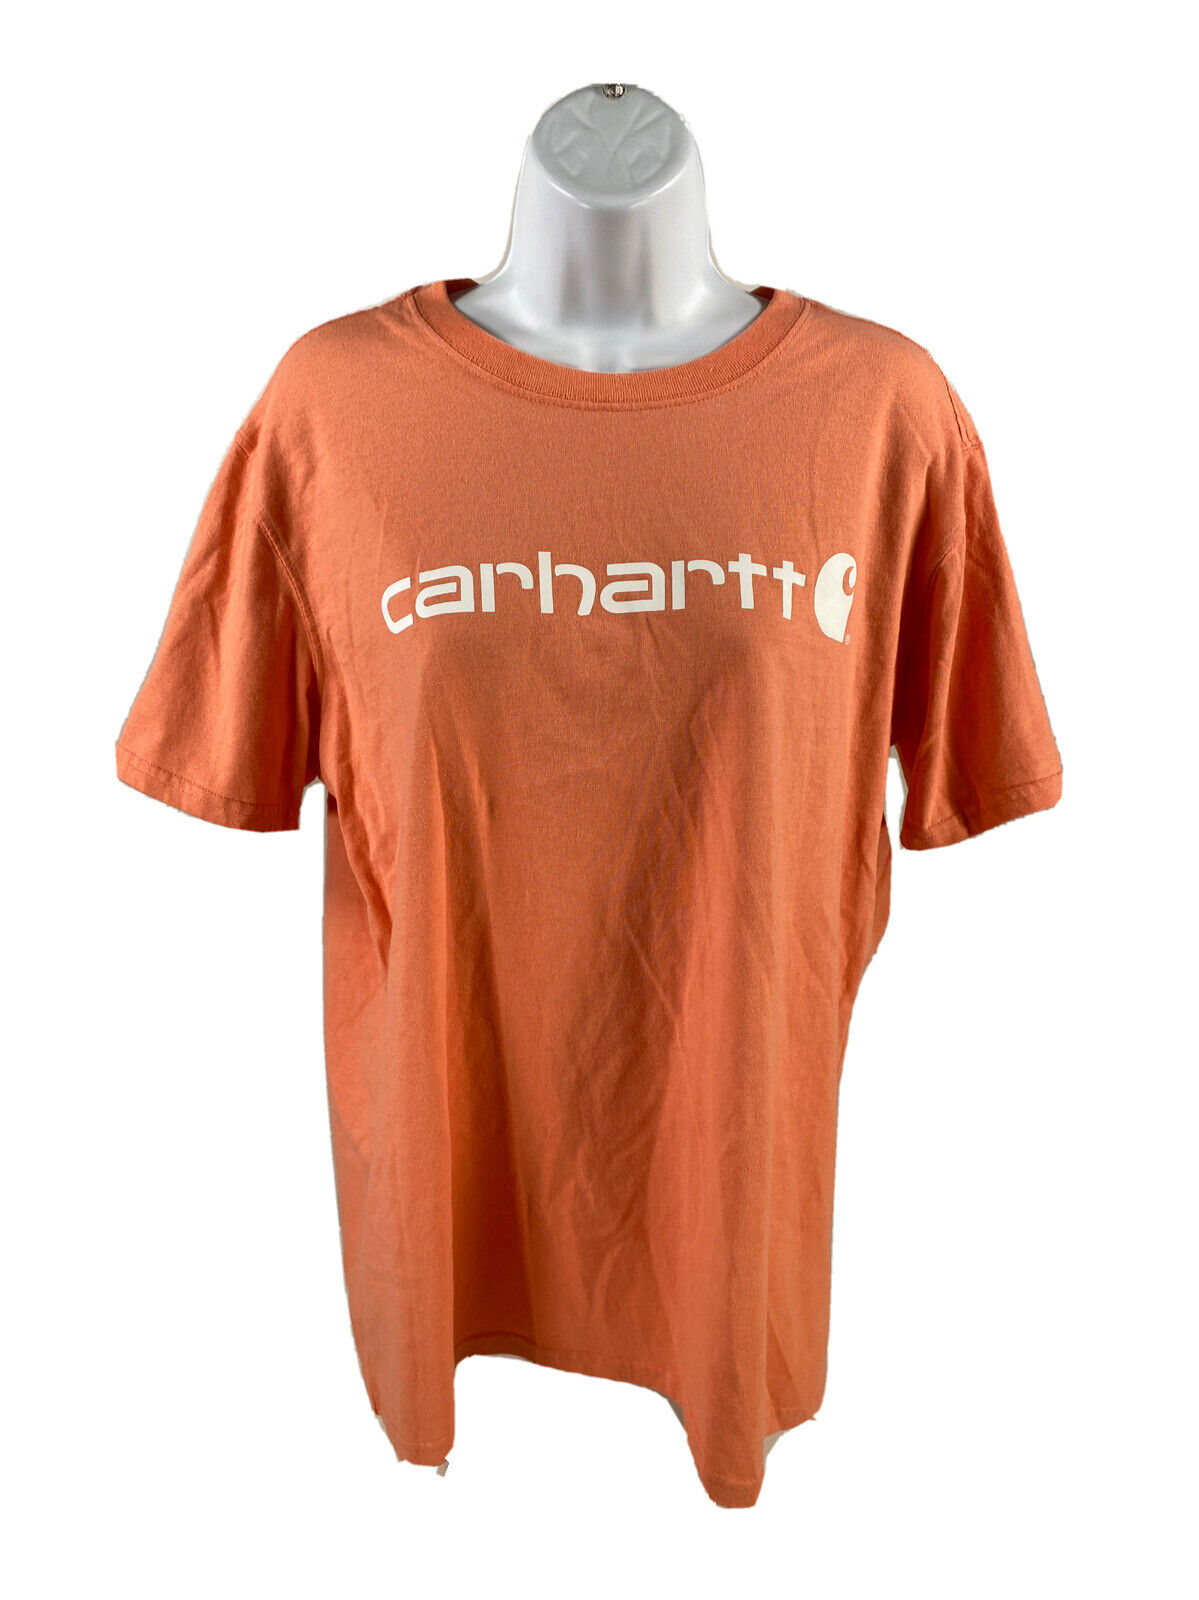 Carhartt Women's Pink Coral Short Sleeve Original Fit Cotton T-Shirt - L